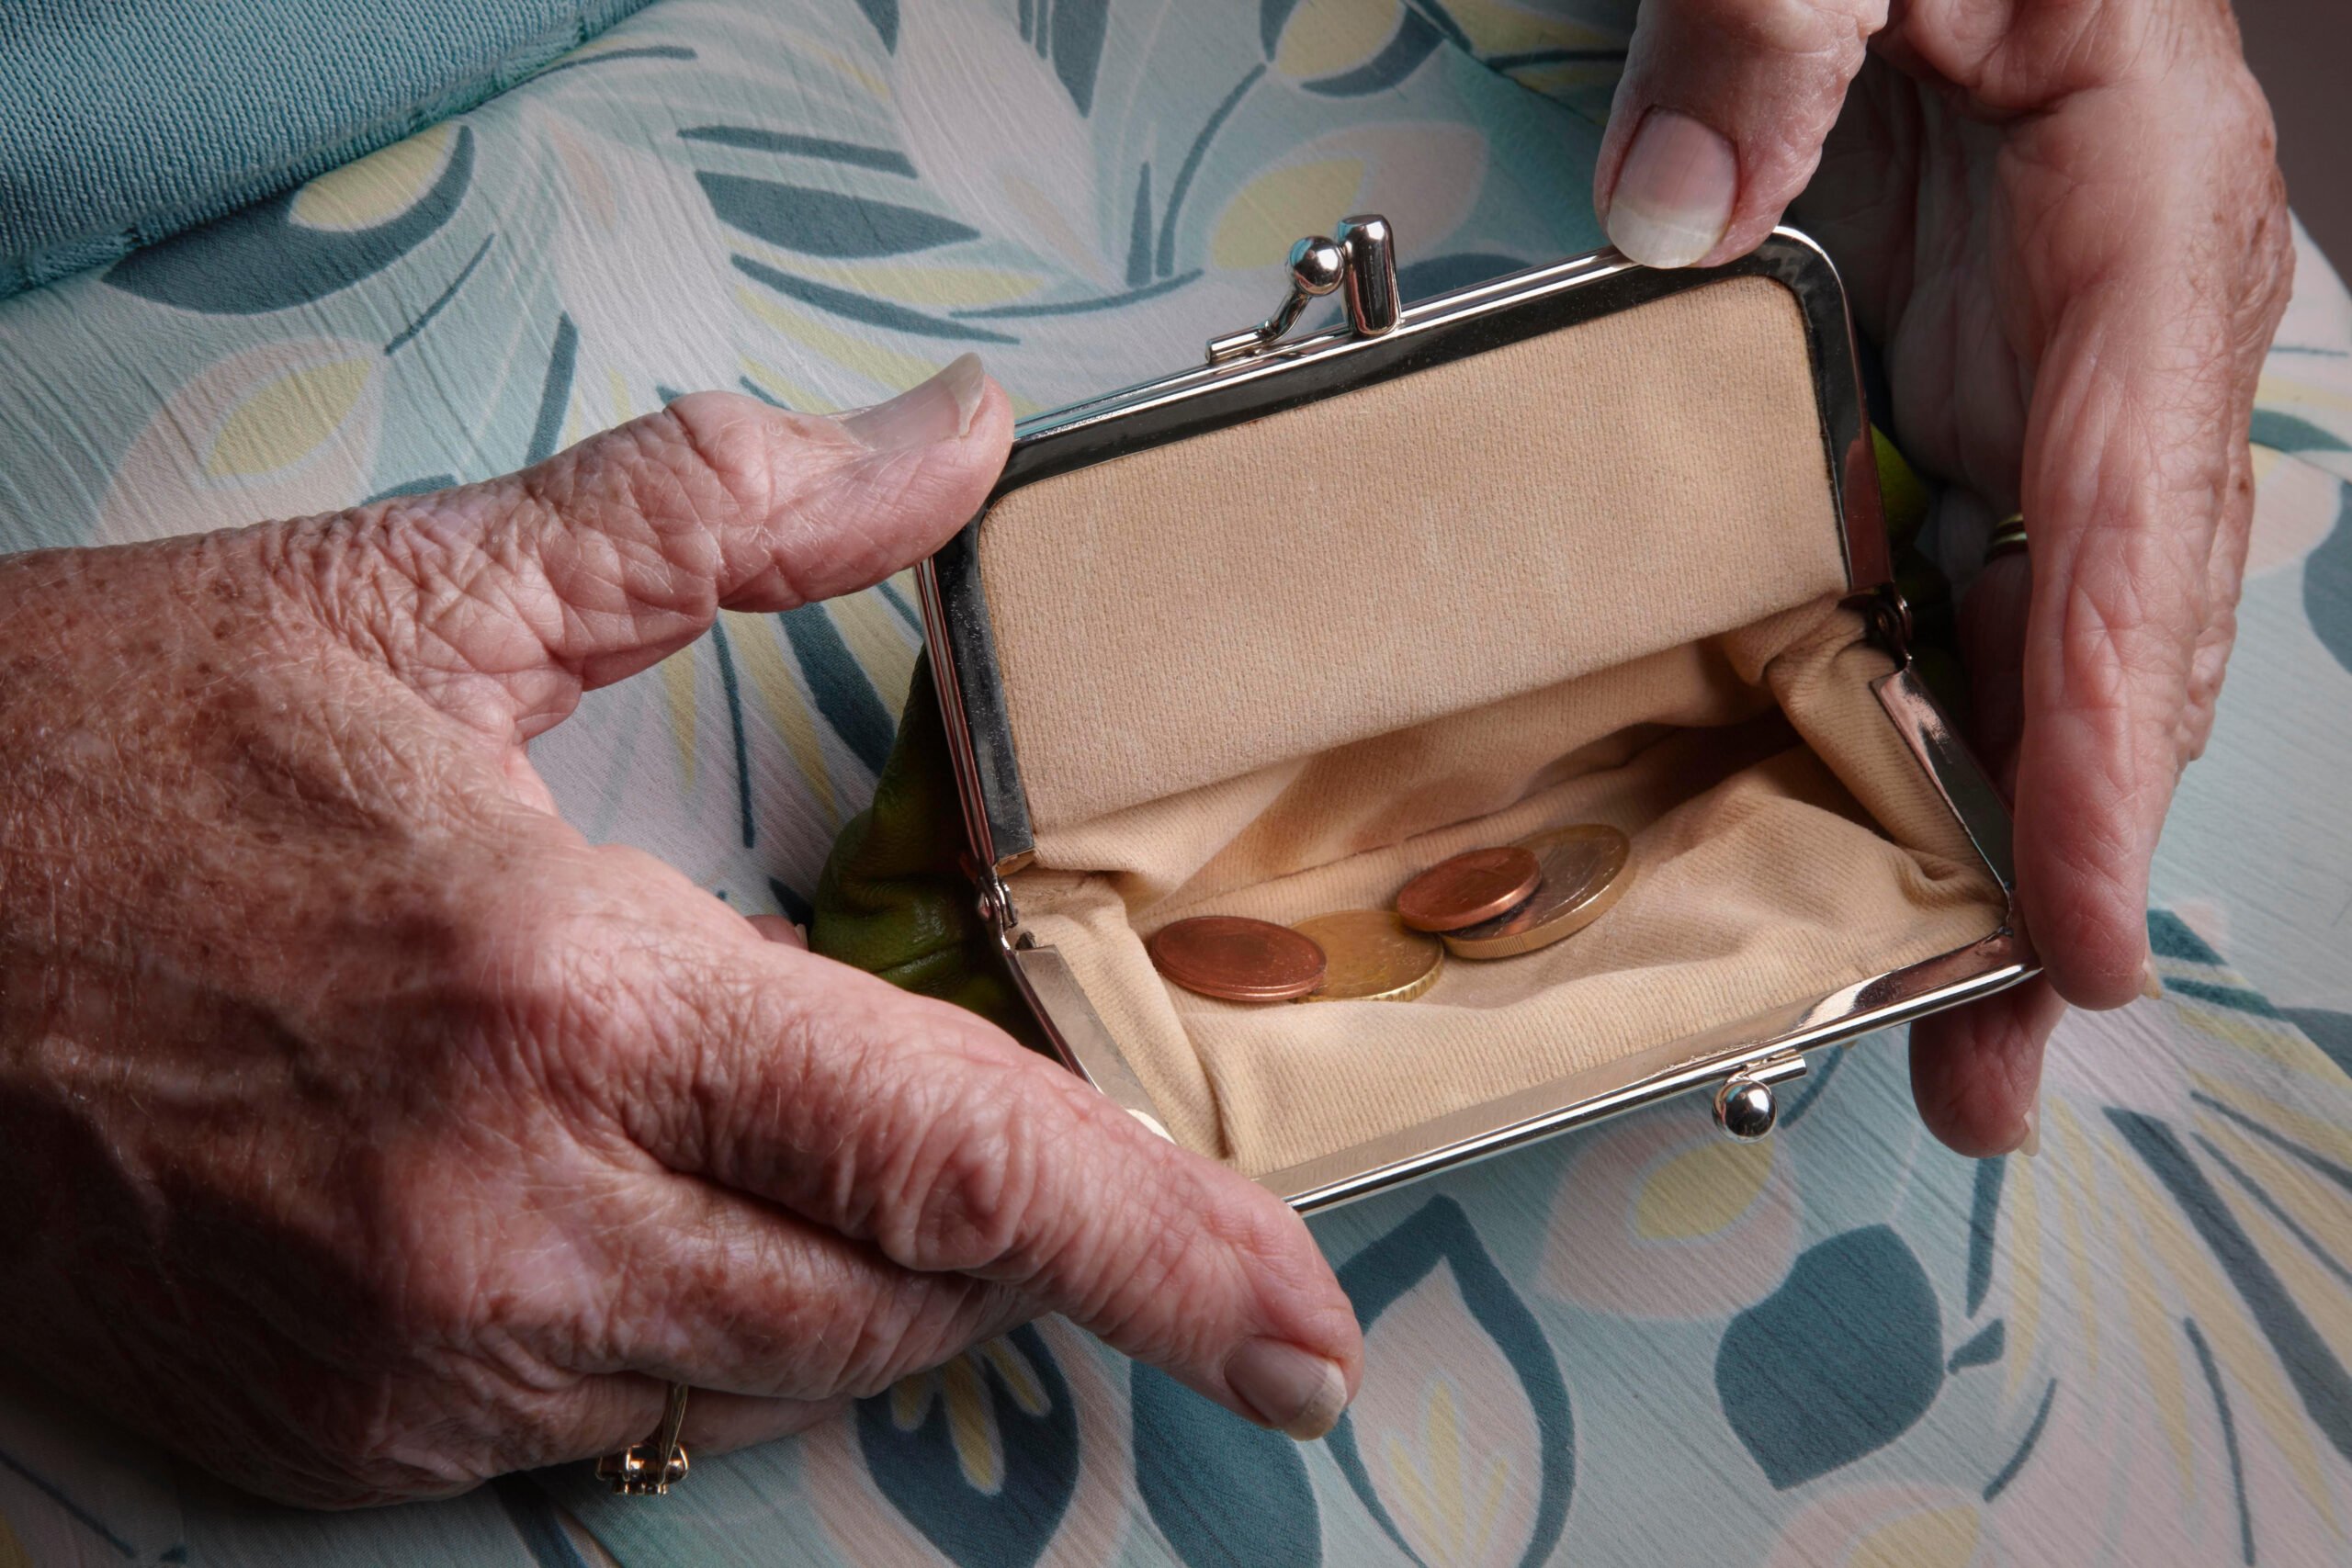 На Херсонщине 81-летняя пенсионерка отдала мошенникам 40 тысяч гривен и 500 долларов за “снятие порчи”